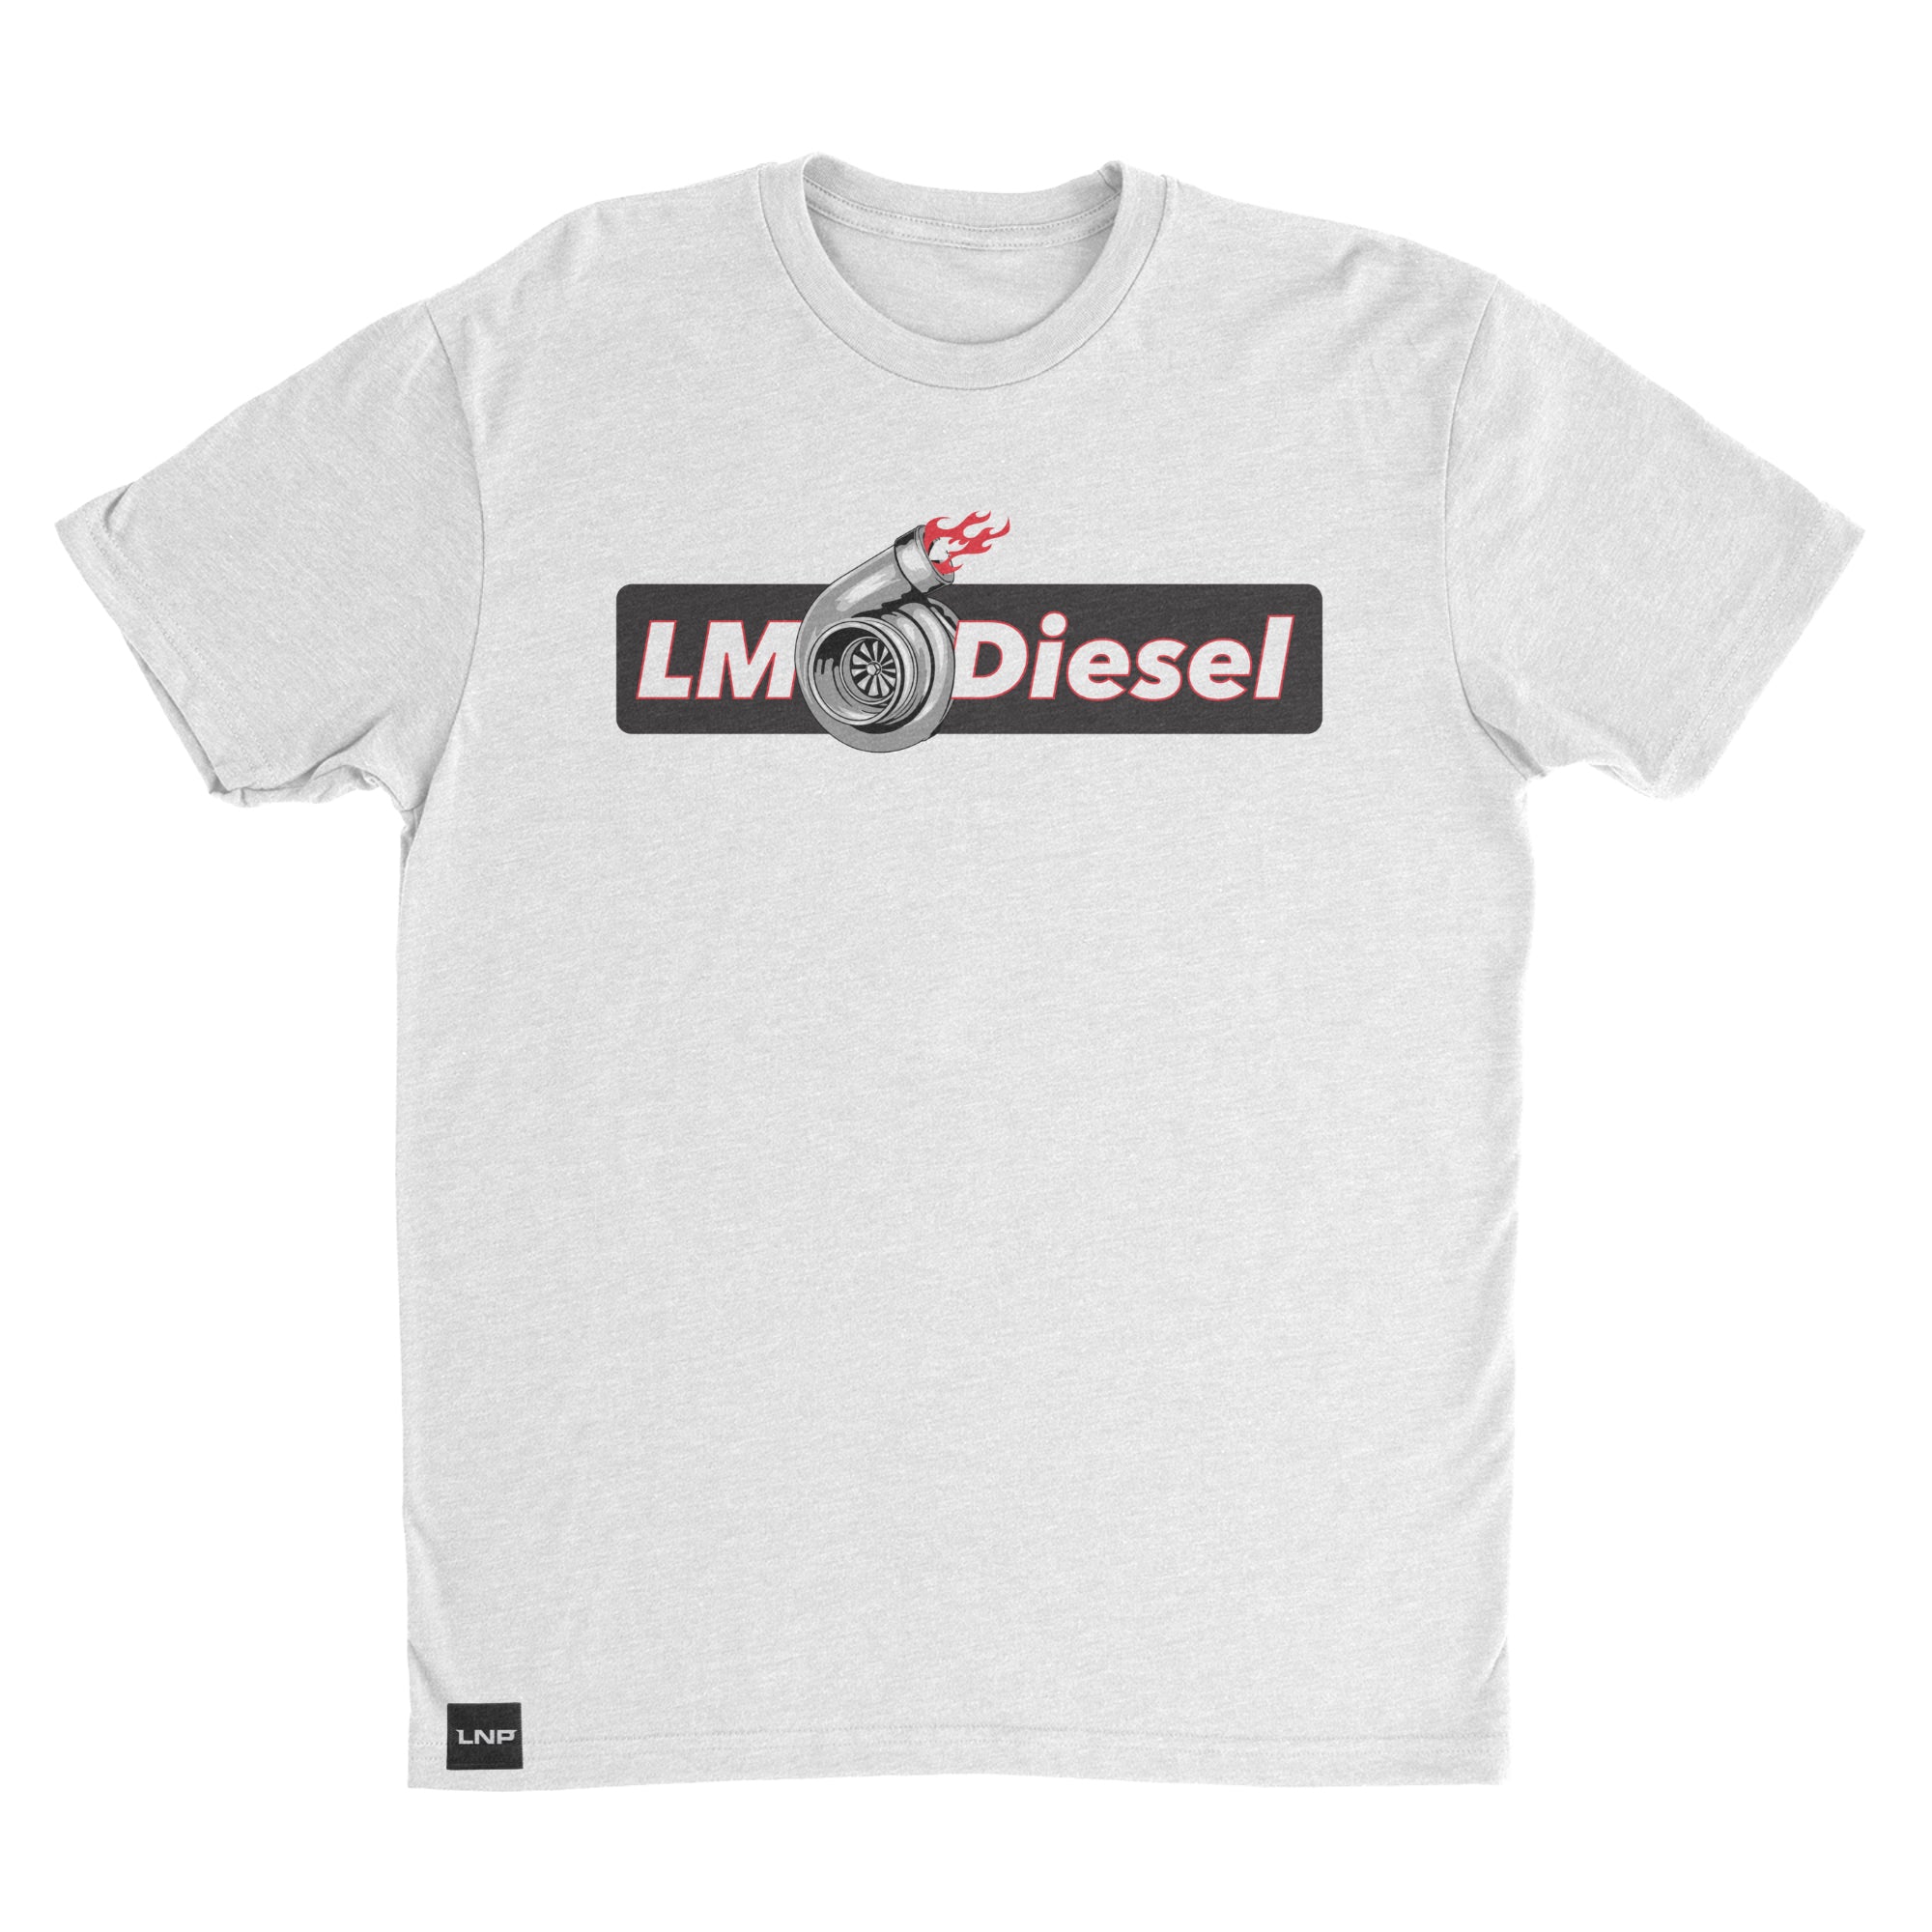 LM Diesel